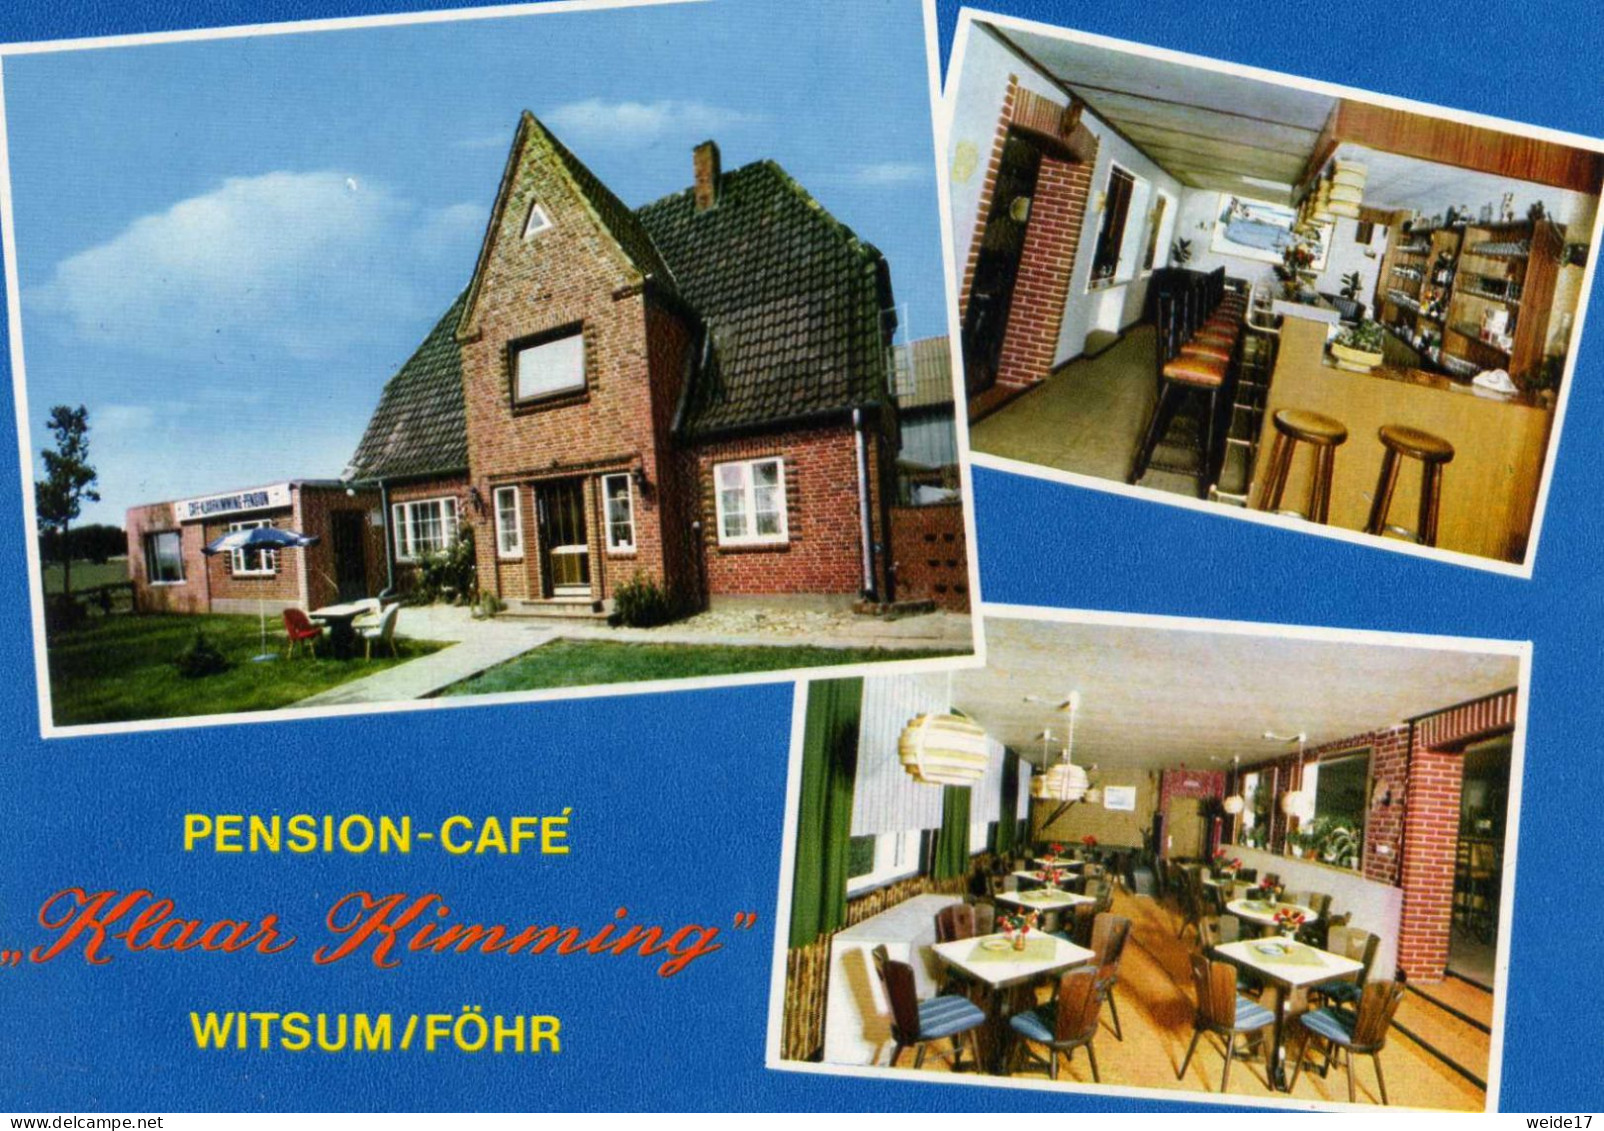 05195 - WITSUM Auf Föhr - MBK Von Der Pension-Café "Klaar Kimming" - Föhr